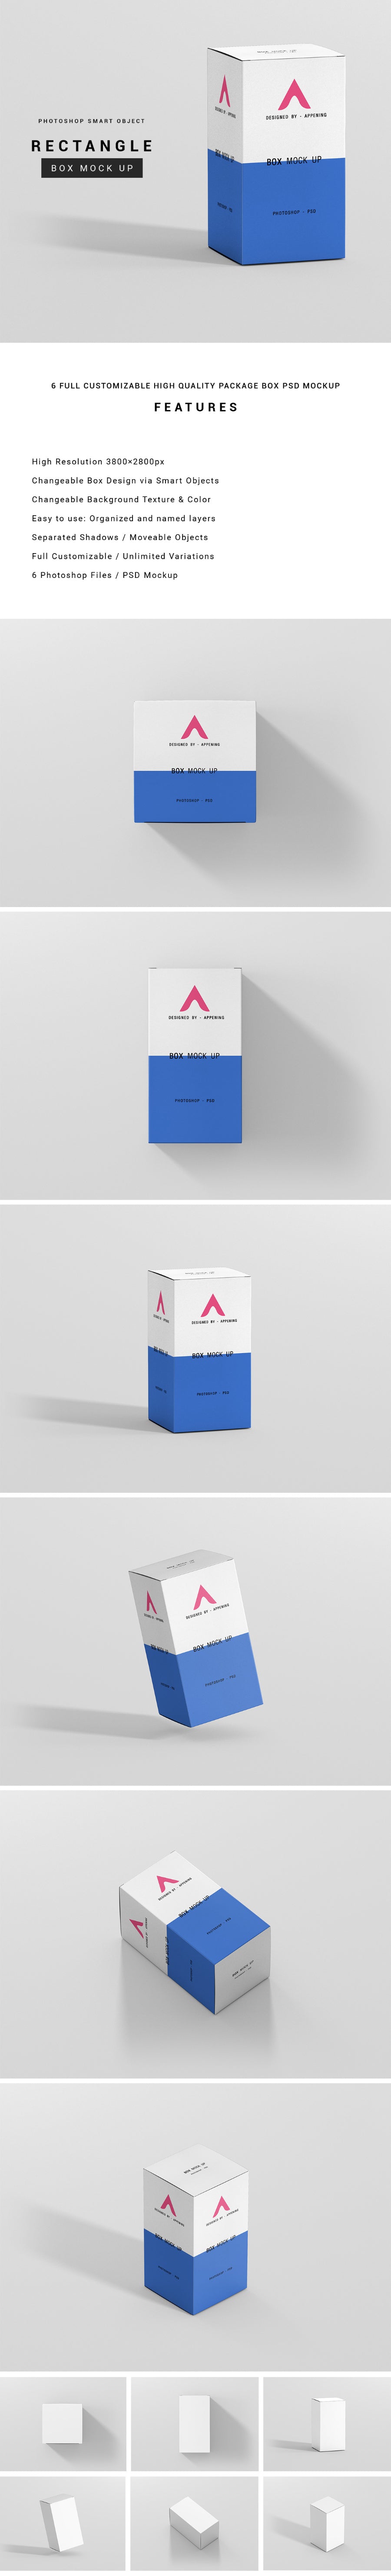 Download Huge Set Of Clean Rectangle Packaging Boxes Psd Mockup Mockup Hunt